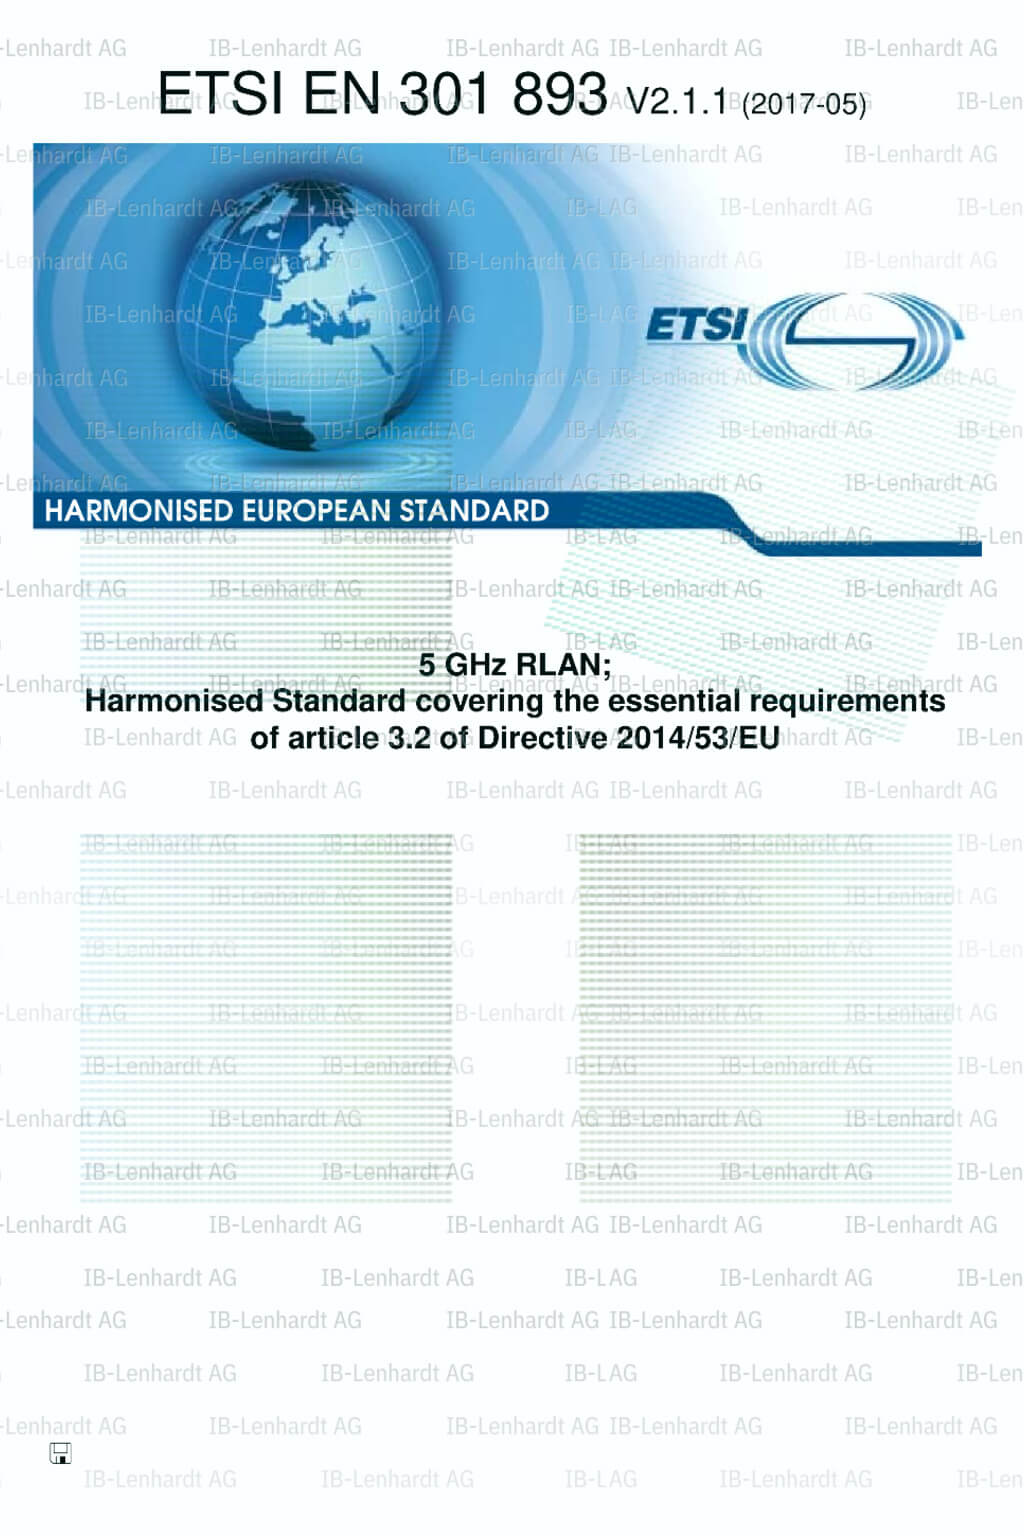 ETSI EN 301 893 V2.1.1